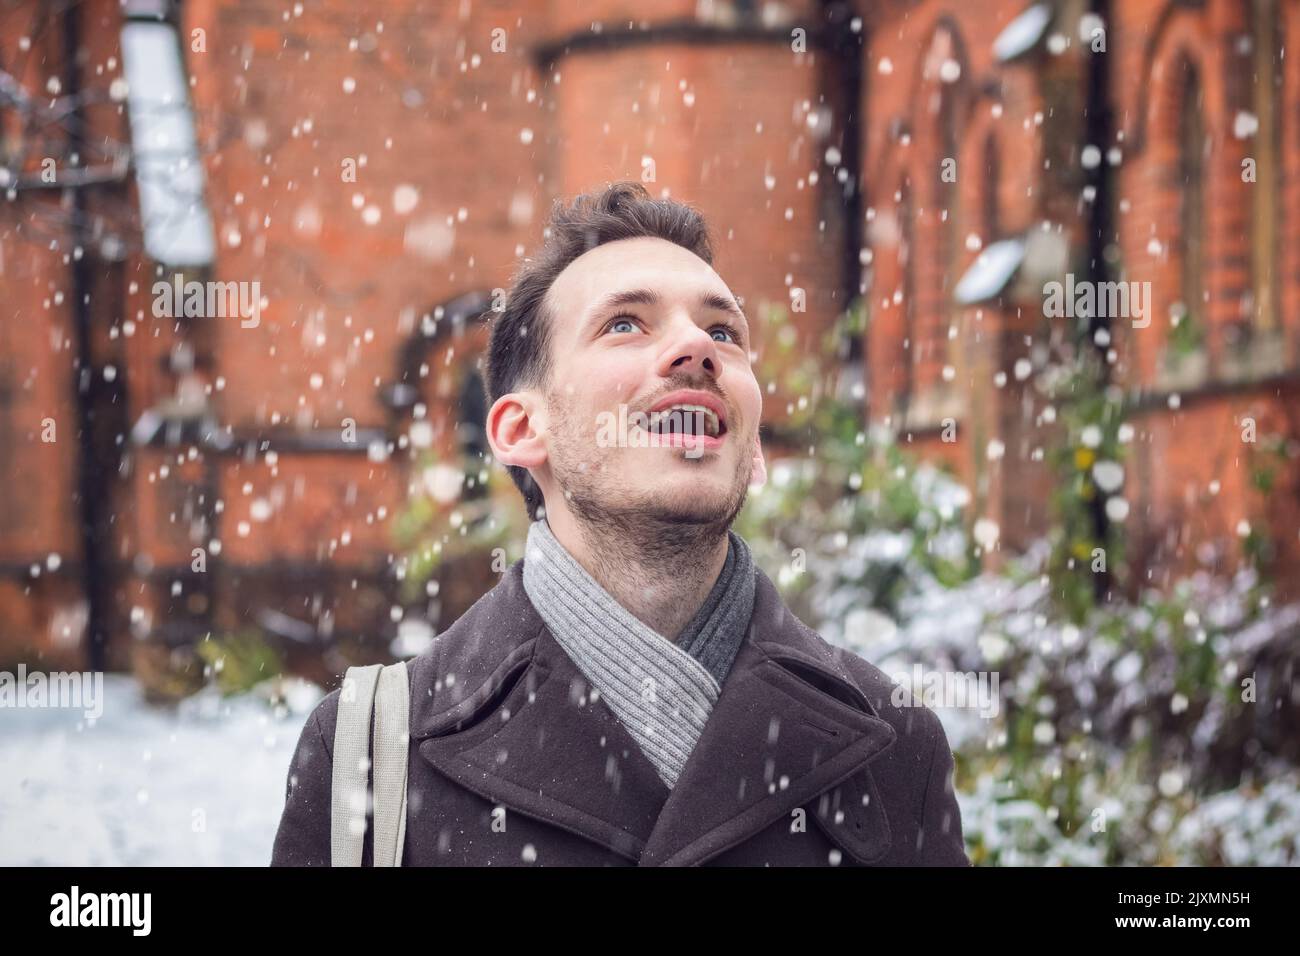 Portrait d'un homme souriant heureux émerveillé par la neige qui tombe en hiver Banque D'Images